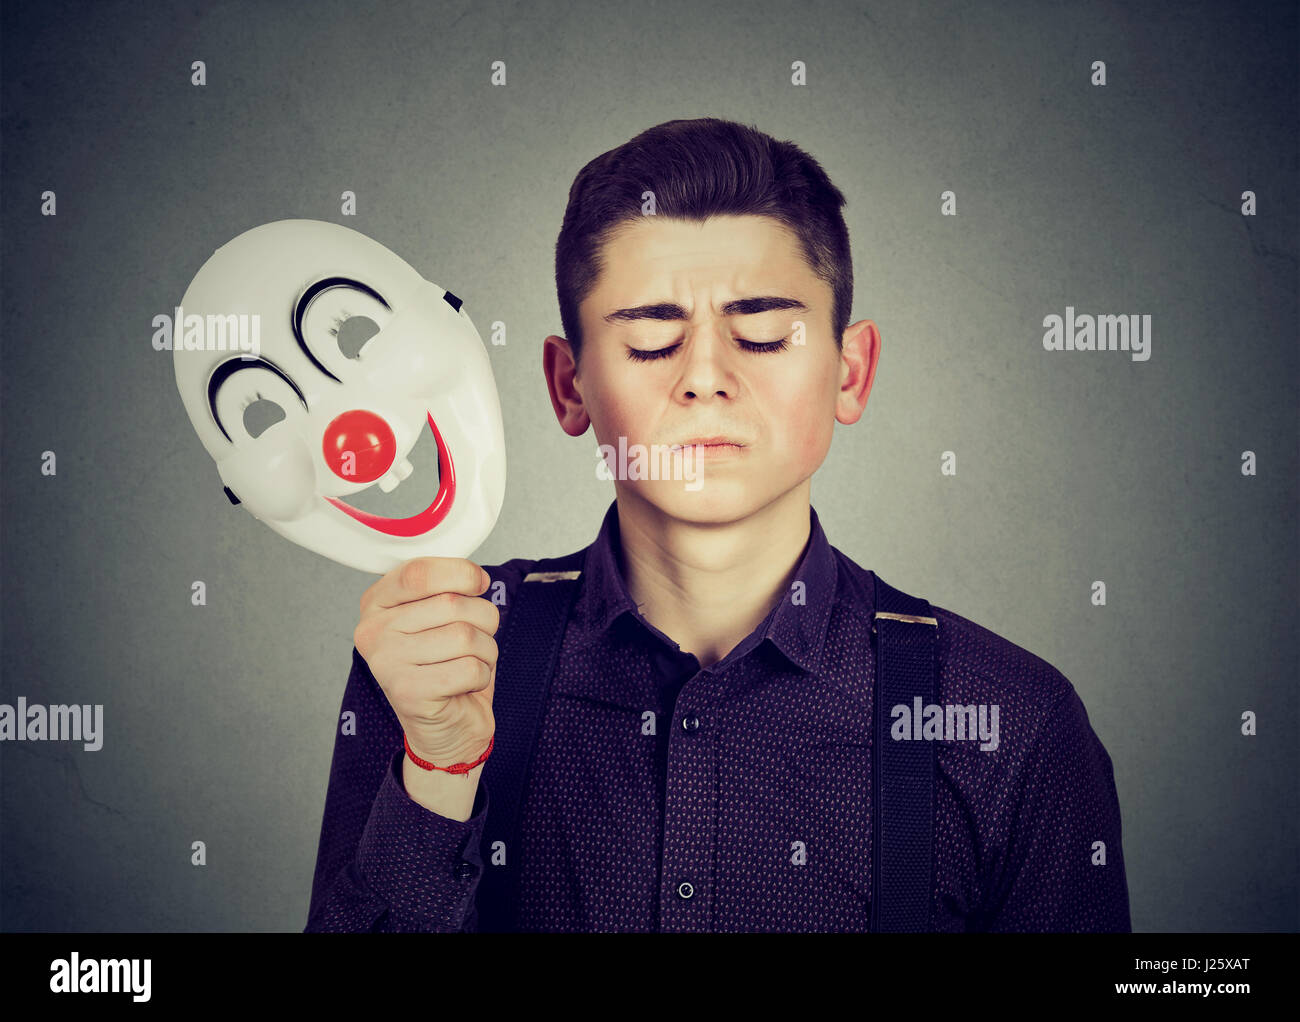 Junge Mann traurig weg Happy clown Maske auf grauem Hintergrund isoliert.  menschlichen Emotionen Stockfotografie - Alamy